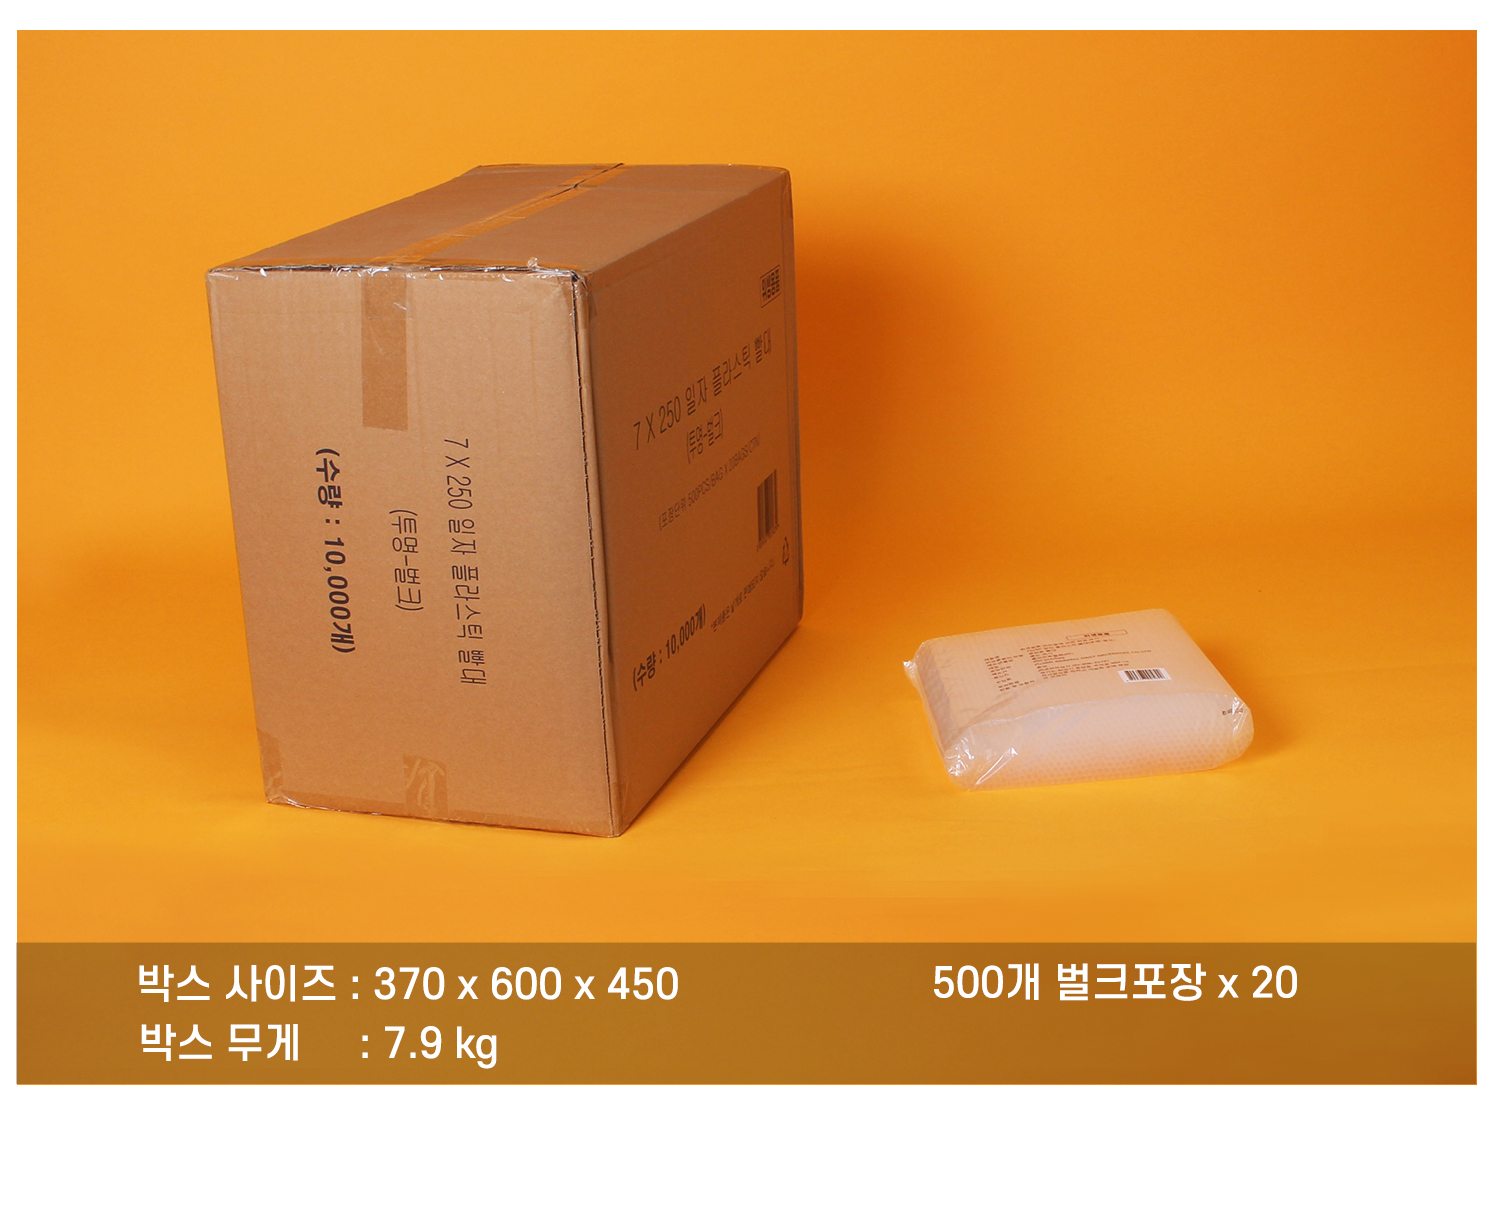 플라스틱일자빨대의 배송되는 박스와 소포장된 단위가 보이는 이미지